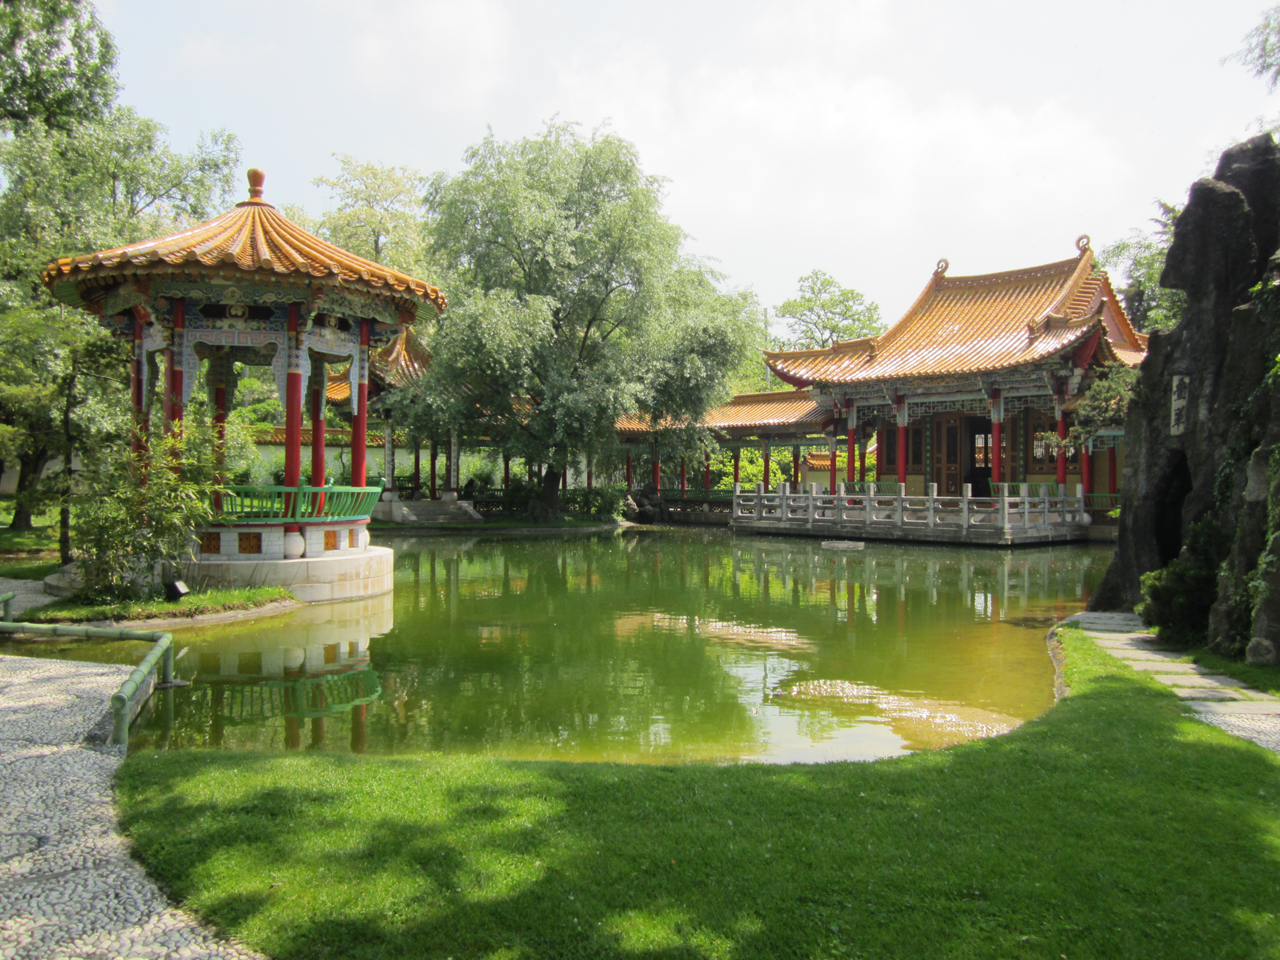 Chinese Garden Attractions In Zurich